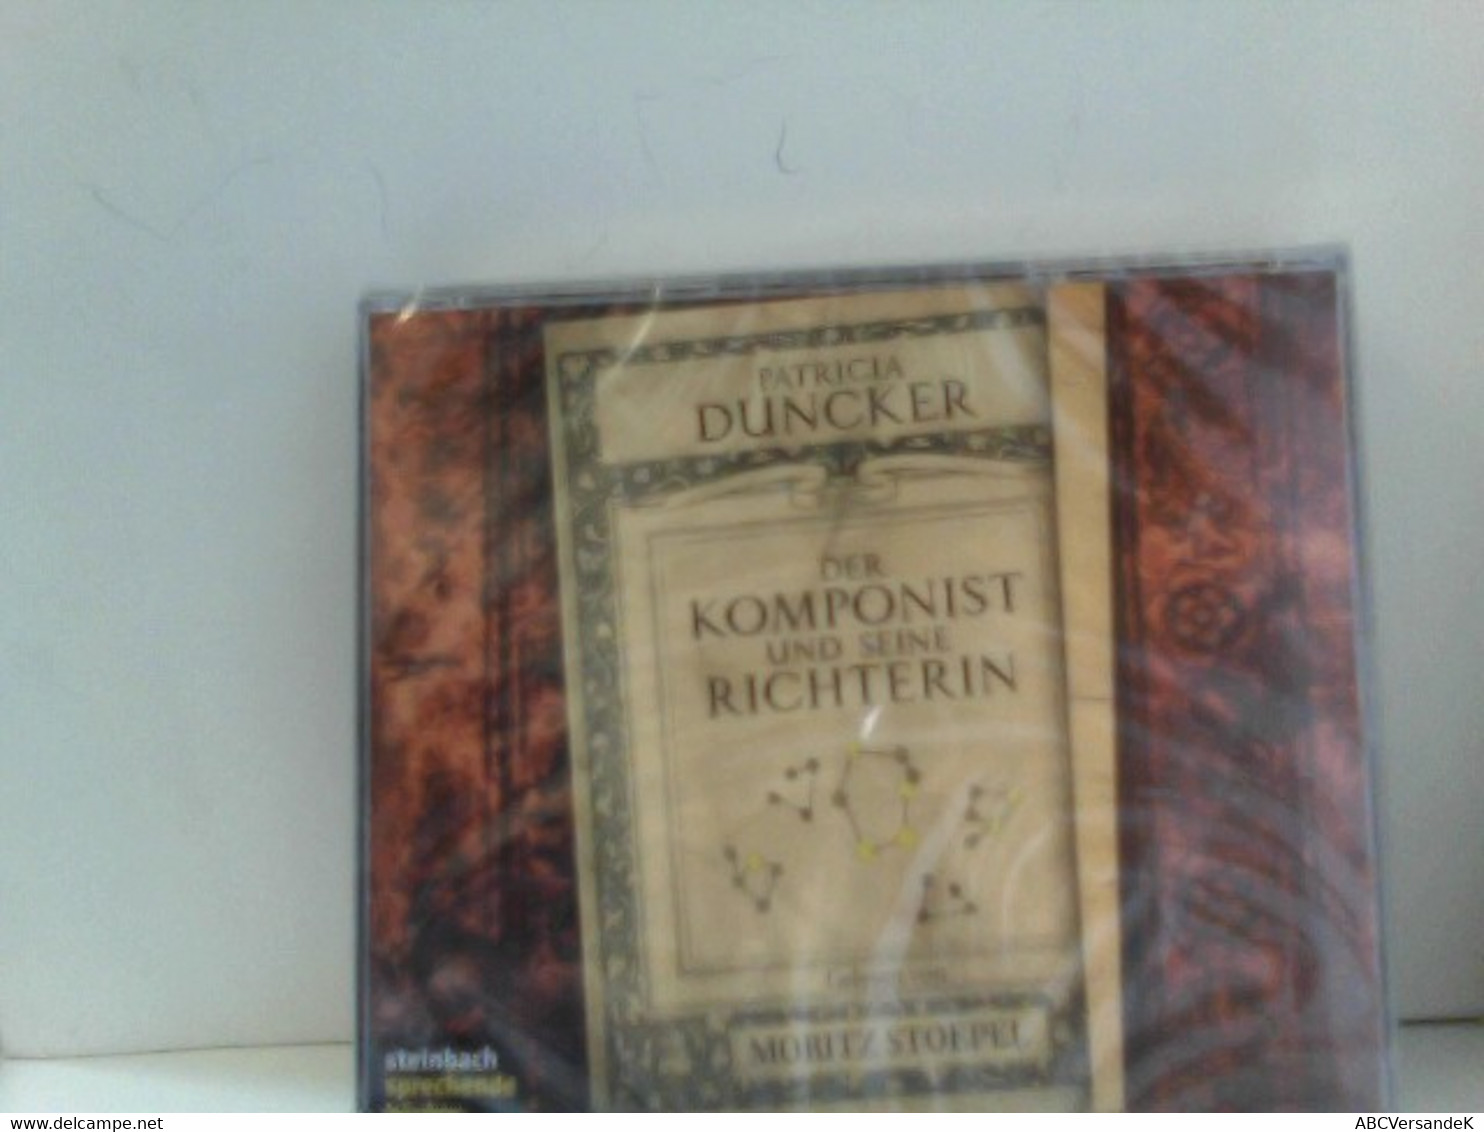 Der Komponist Und Seine Richterin. 6 CDs - CD